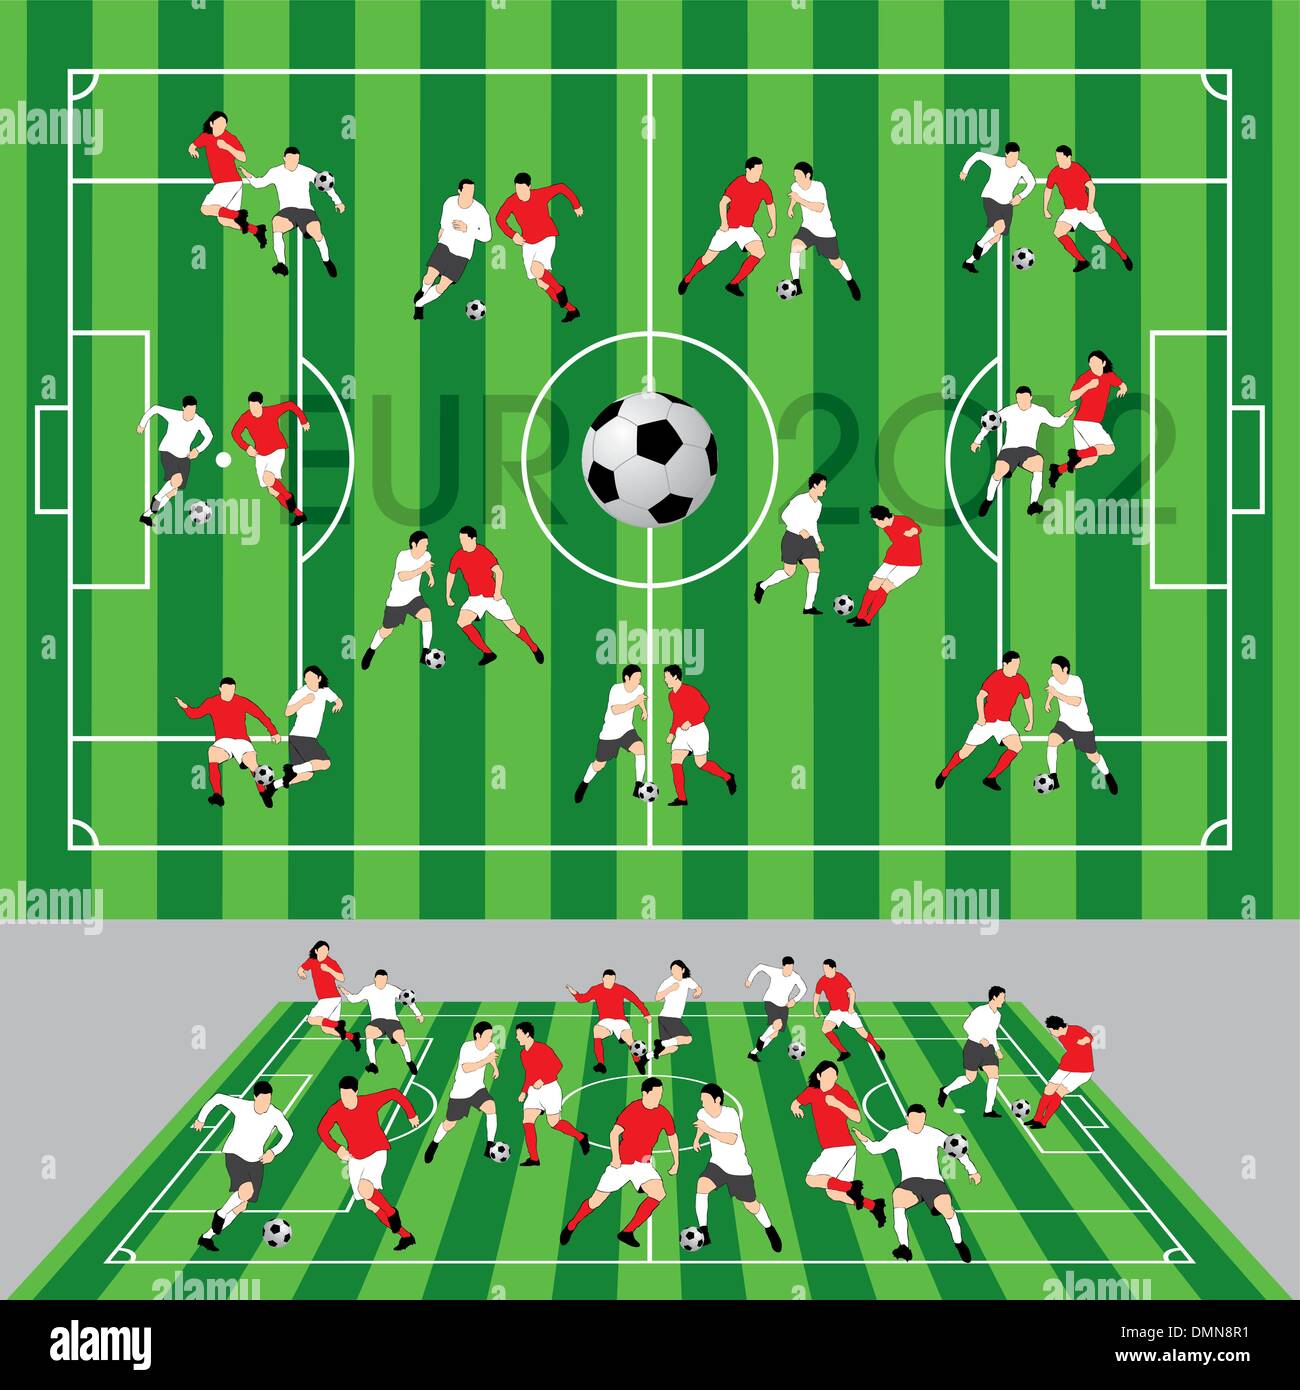 Football Cricket Stadium Line Drawing Illustration Stock Vector (Royalty  Free) 2321603465 | Shutterstock